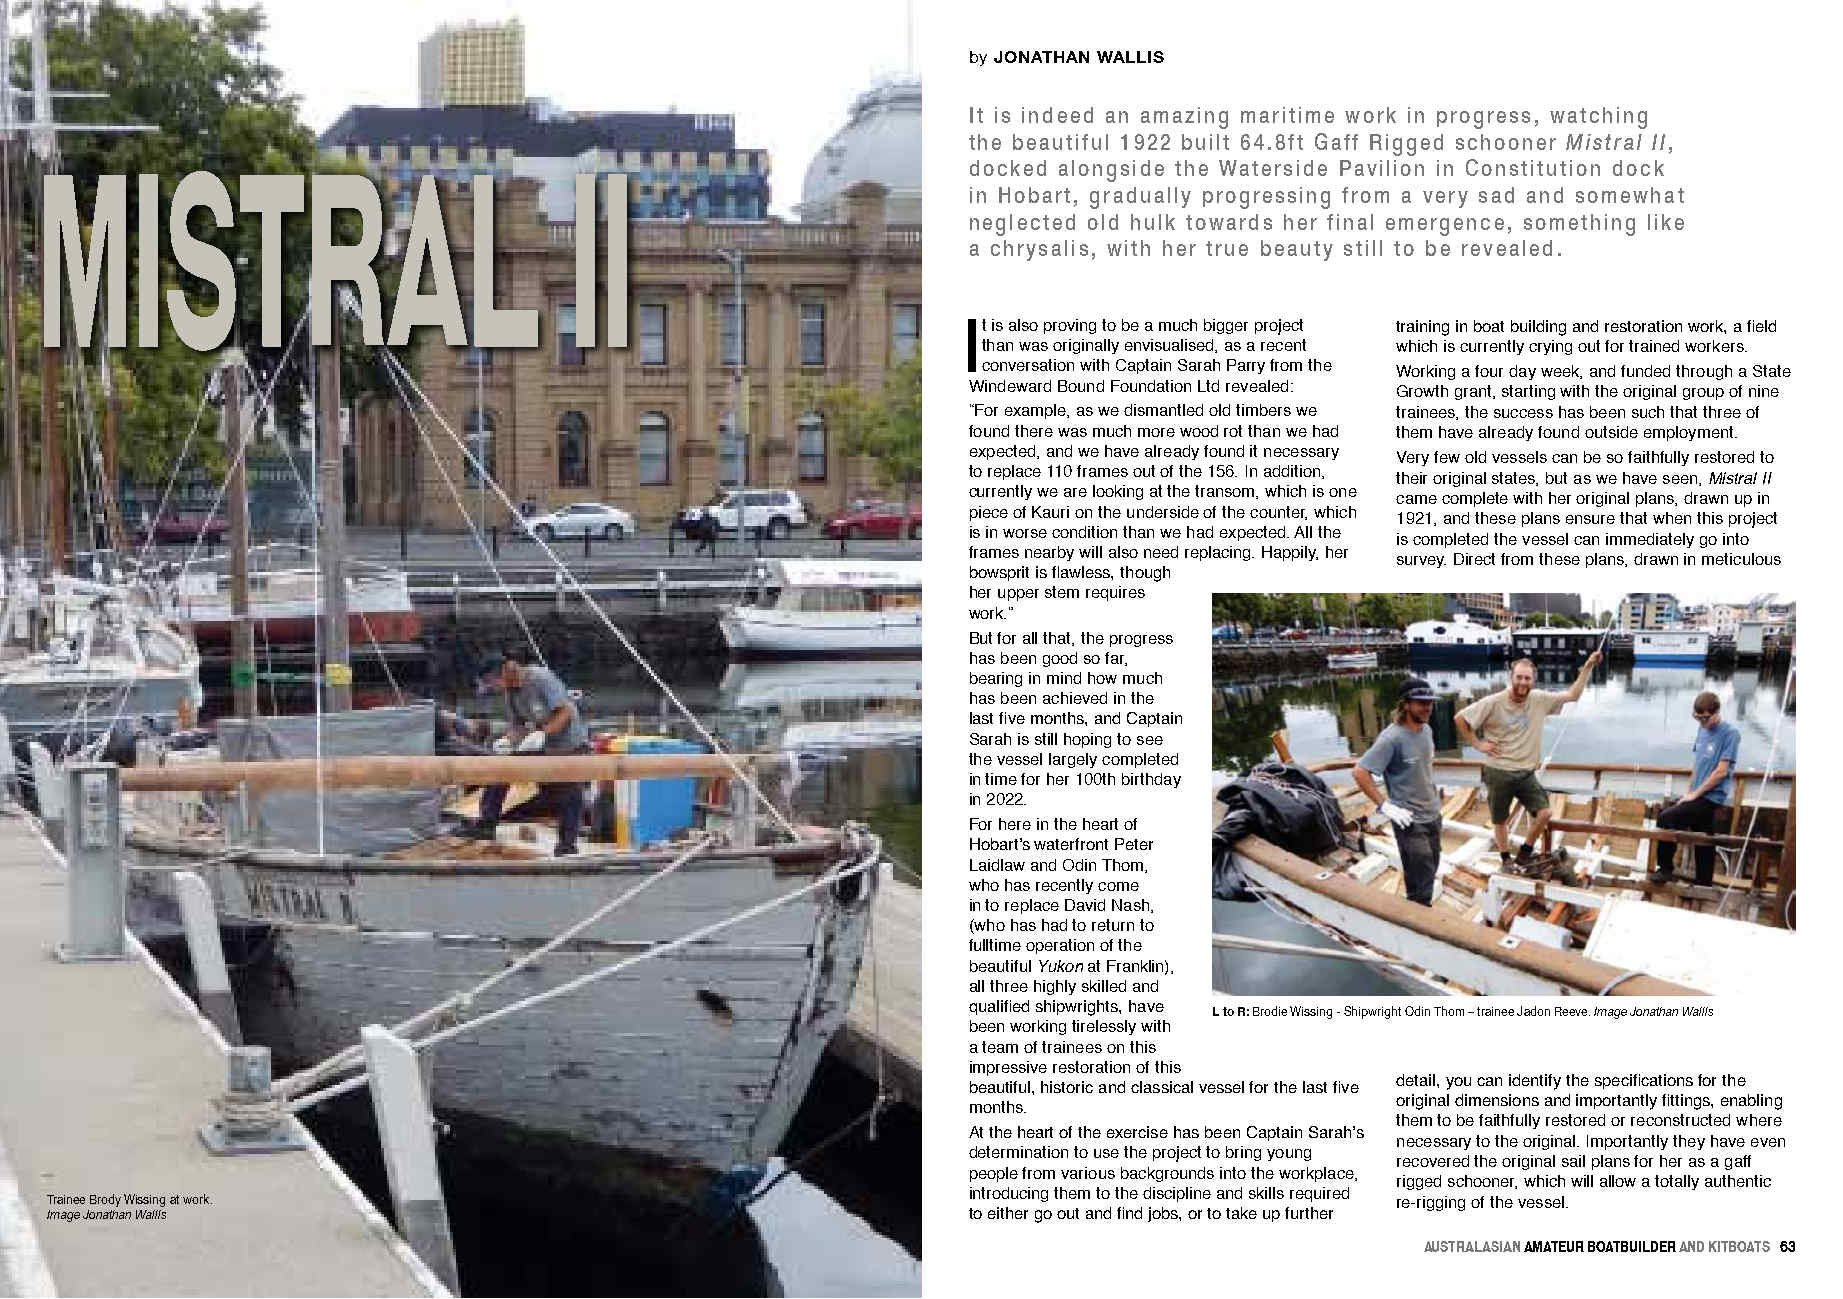 Australasian Amature Boat Building Magazine — Windeward Bound hq nude image